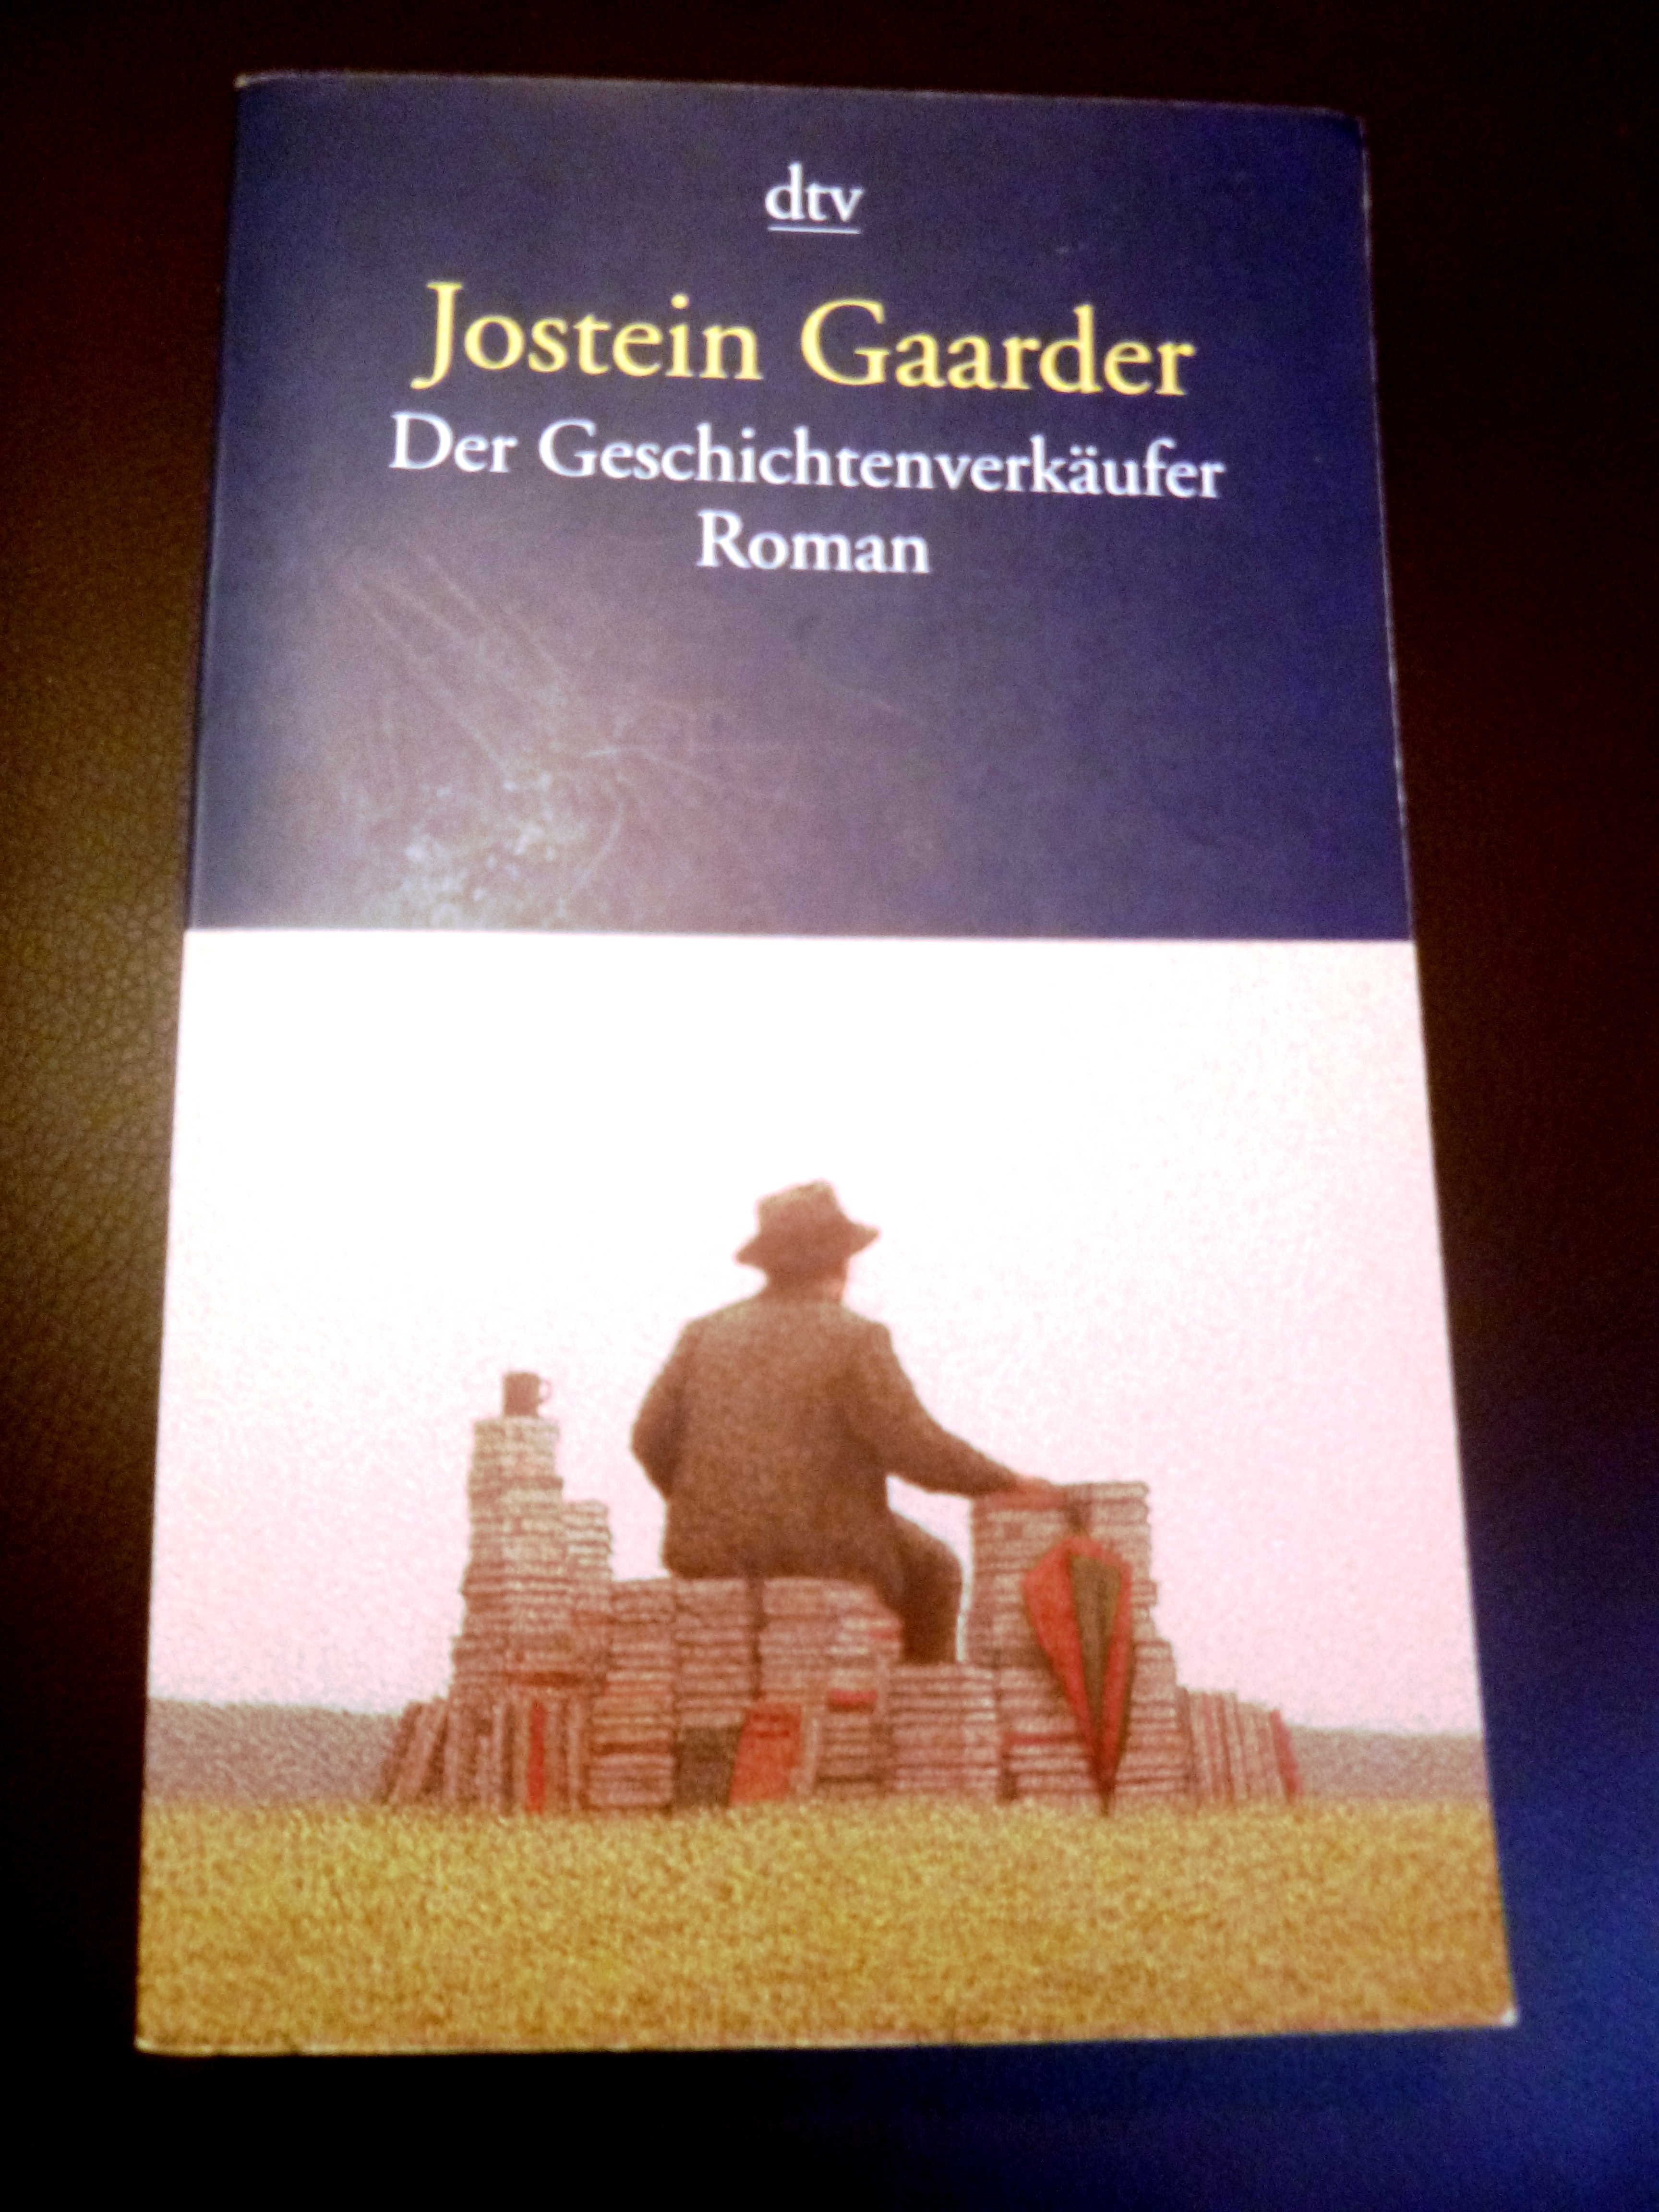 [BücherinBüchern] "Der Geschichtenverkäufer" von Jostein Gaarder